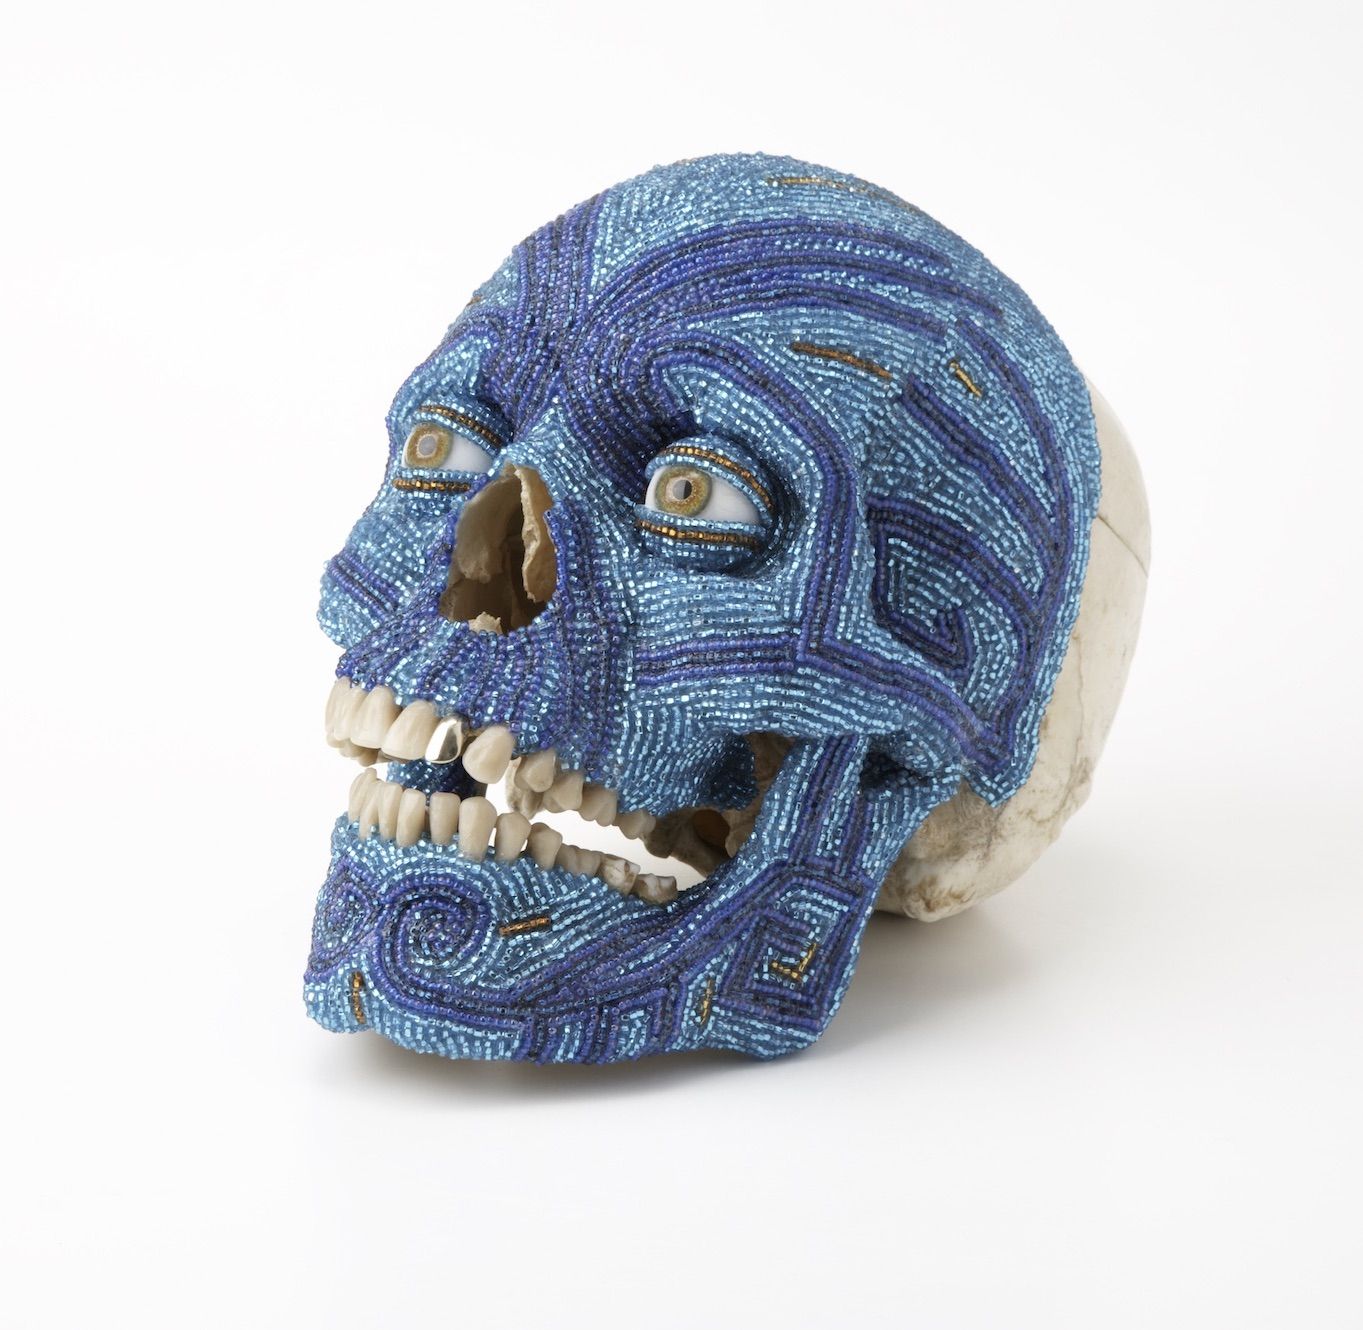 Steven Gregory, (b.1952), Wham Bam!, 2008, Human skull, glass beads and gold